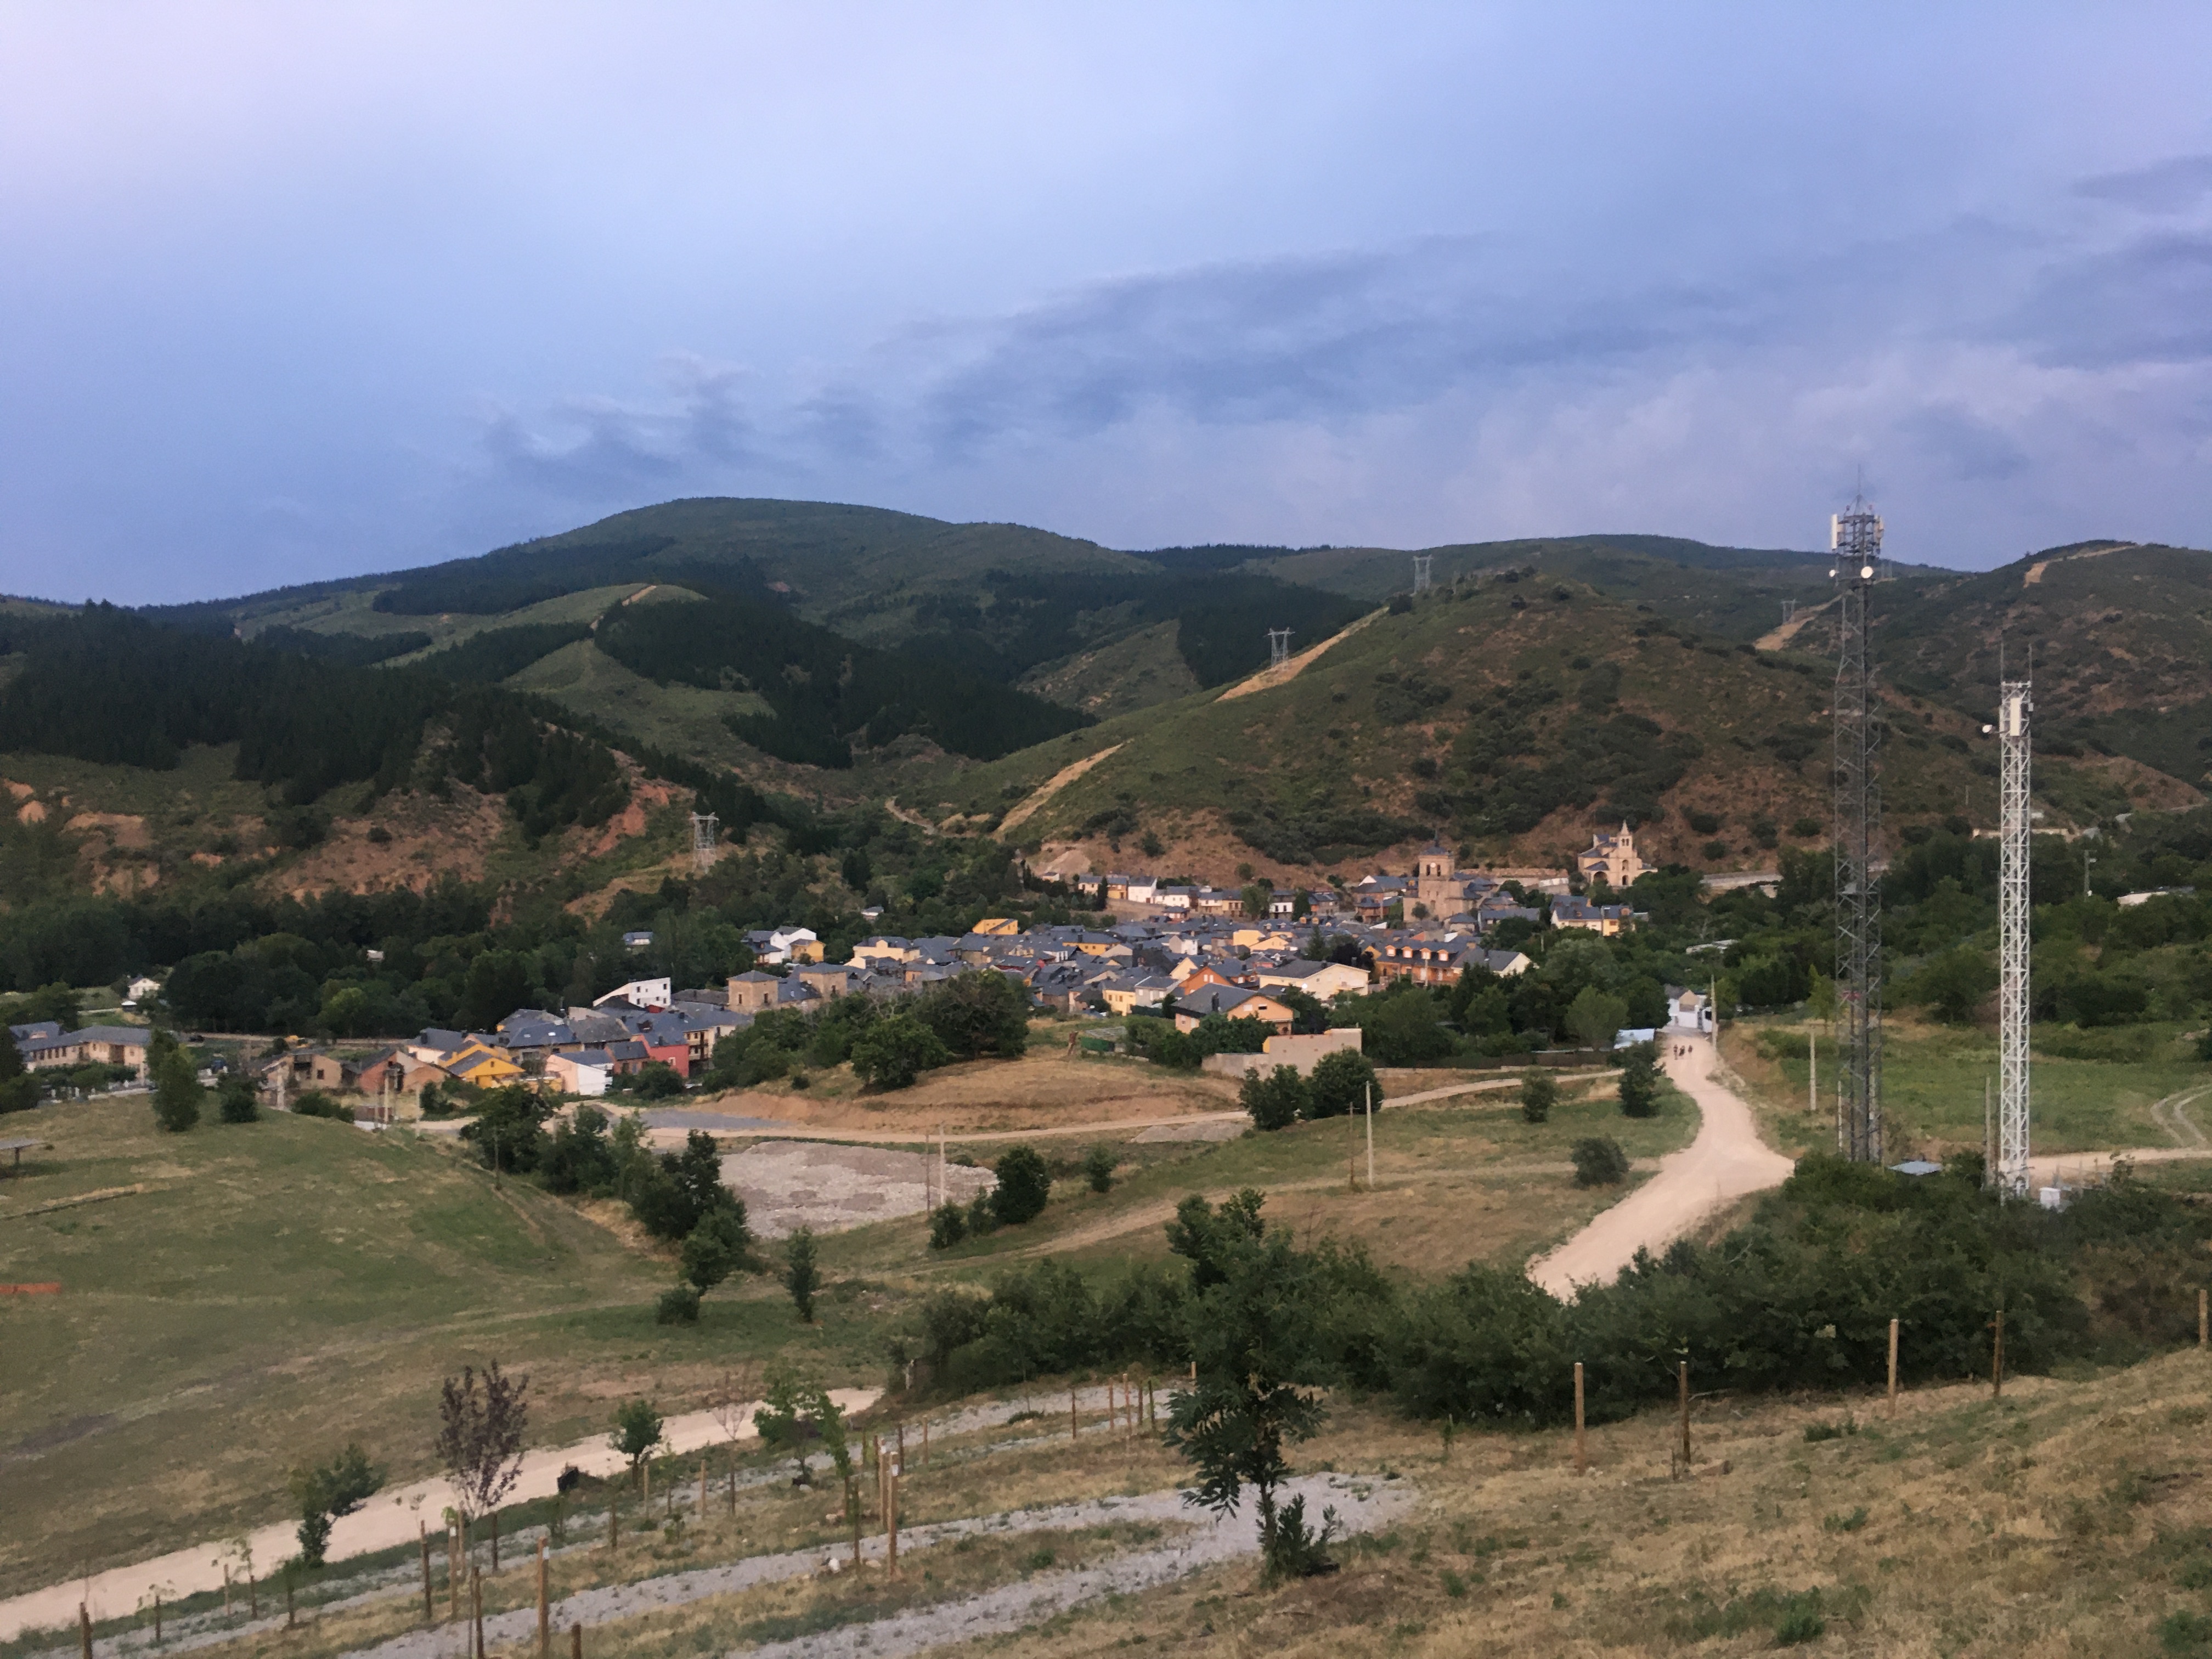 Vista desde una ladera del pueblo de Molinaseca. En el segundo plano se ve el pueblo y unas antenas de telecomunicación. En el fondo los montes leoneses.